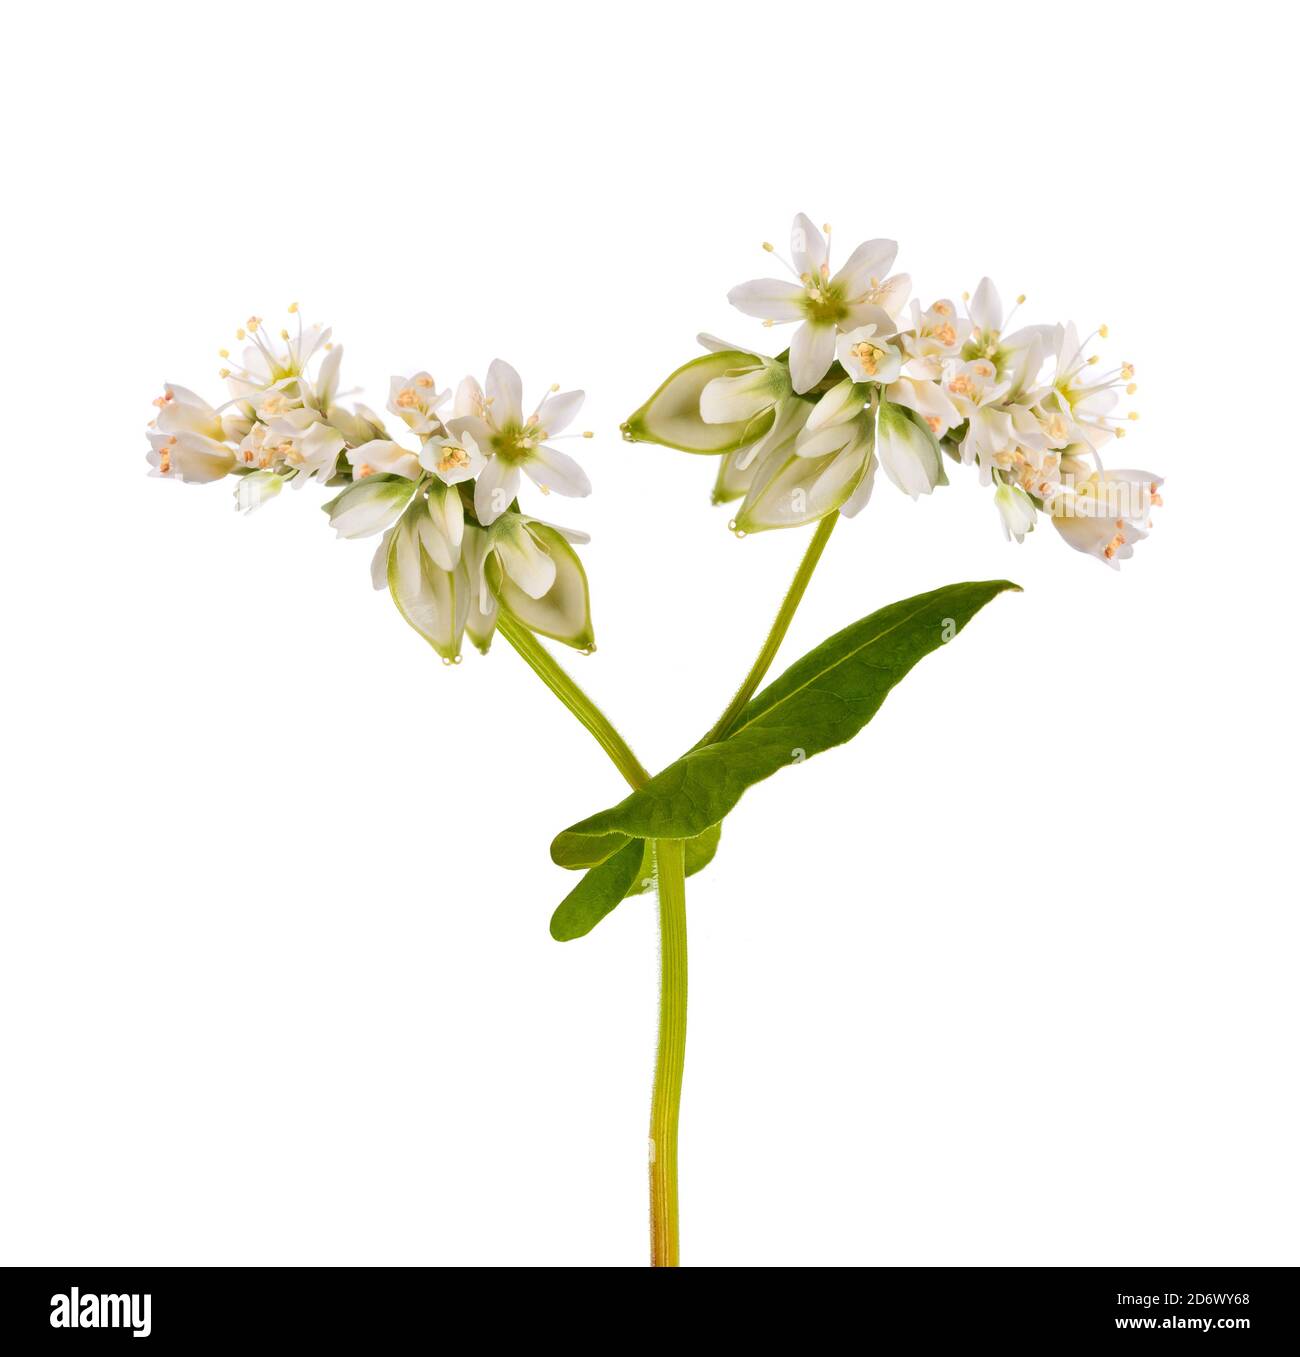 Buckwheat  flowers isolated on white background Stock Photo